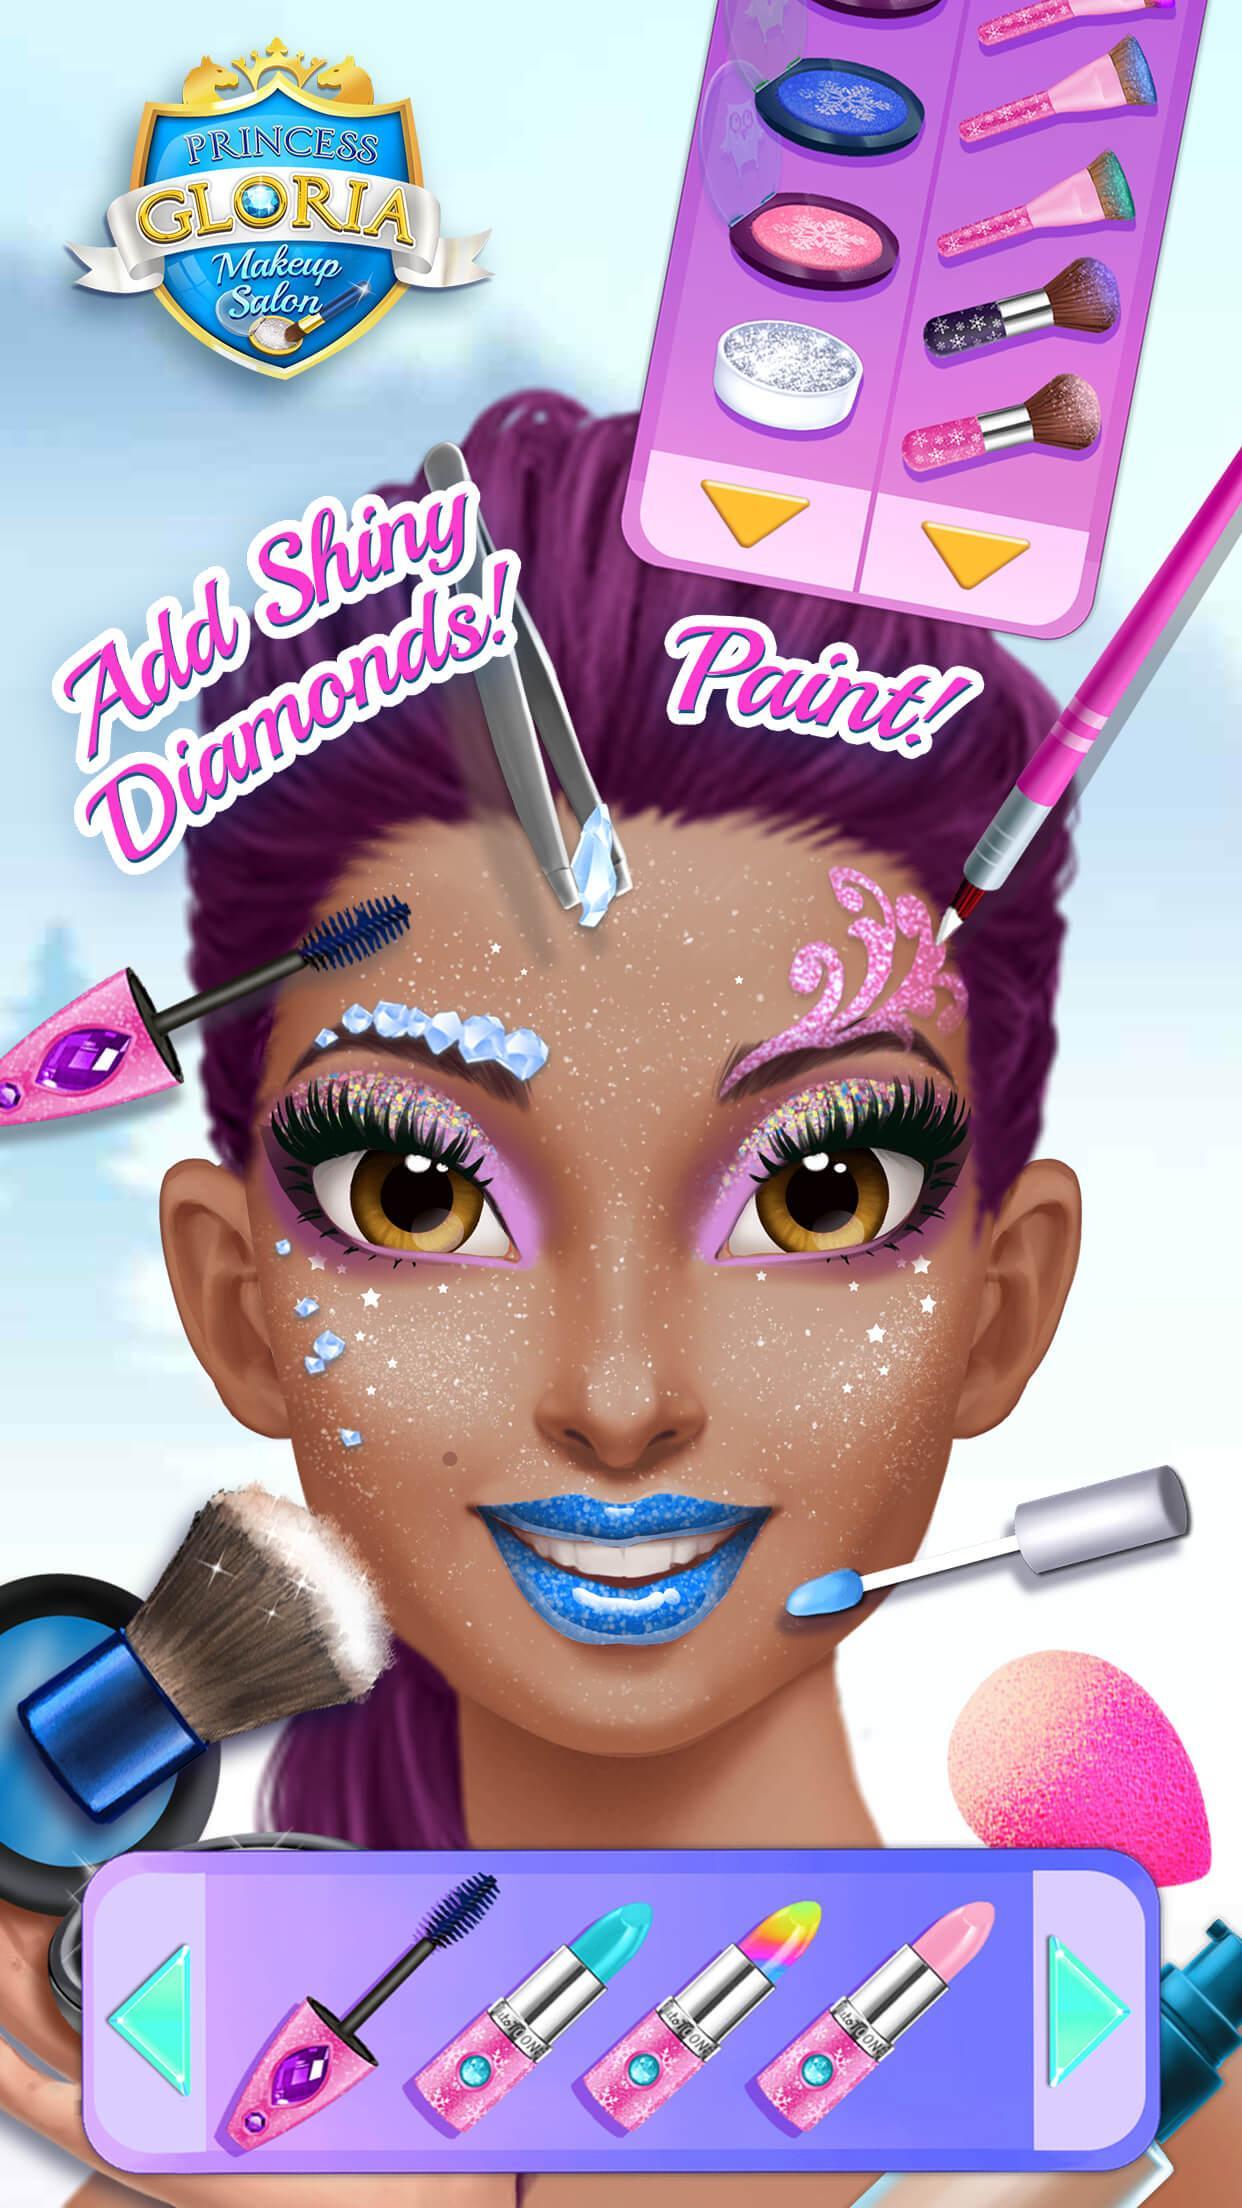 Princess Gloria Makeup Salon 3.0.31 Screenshot 1